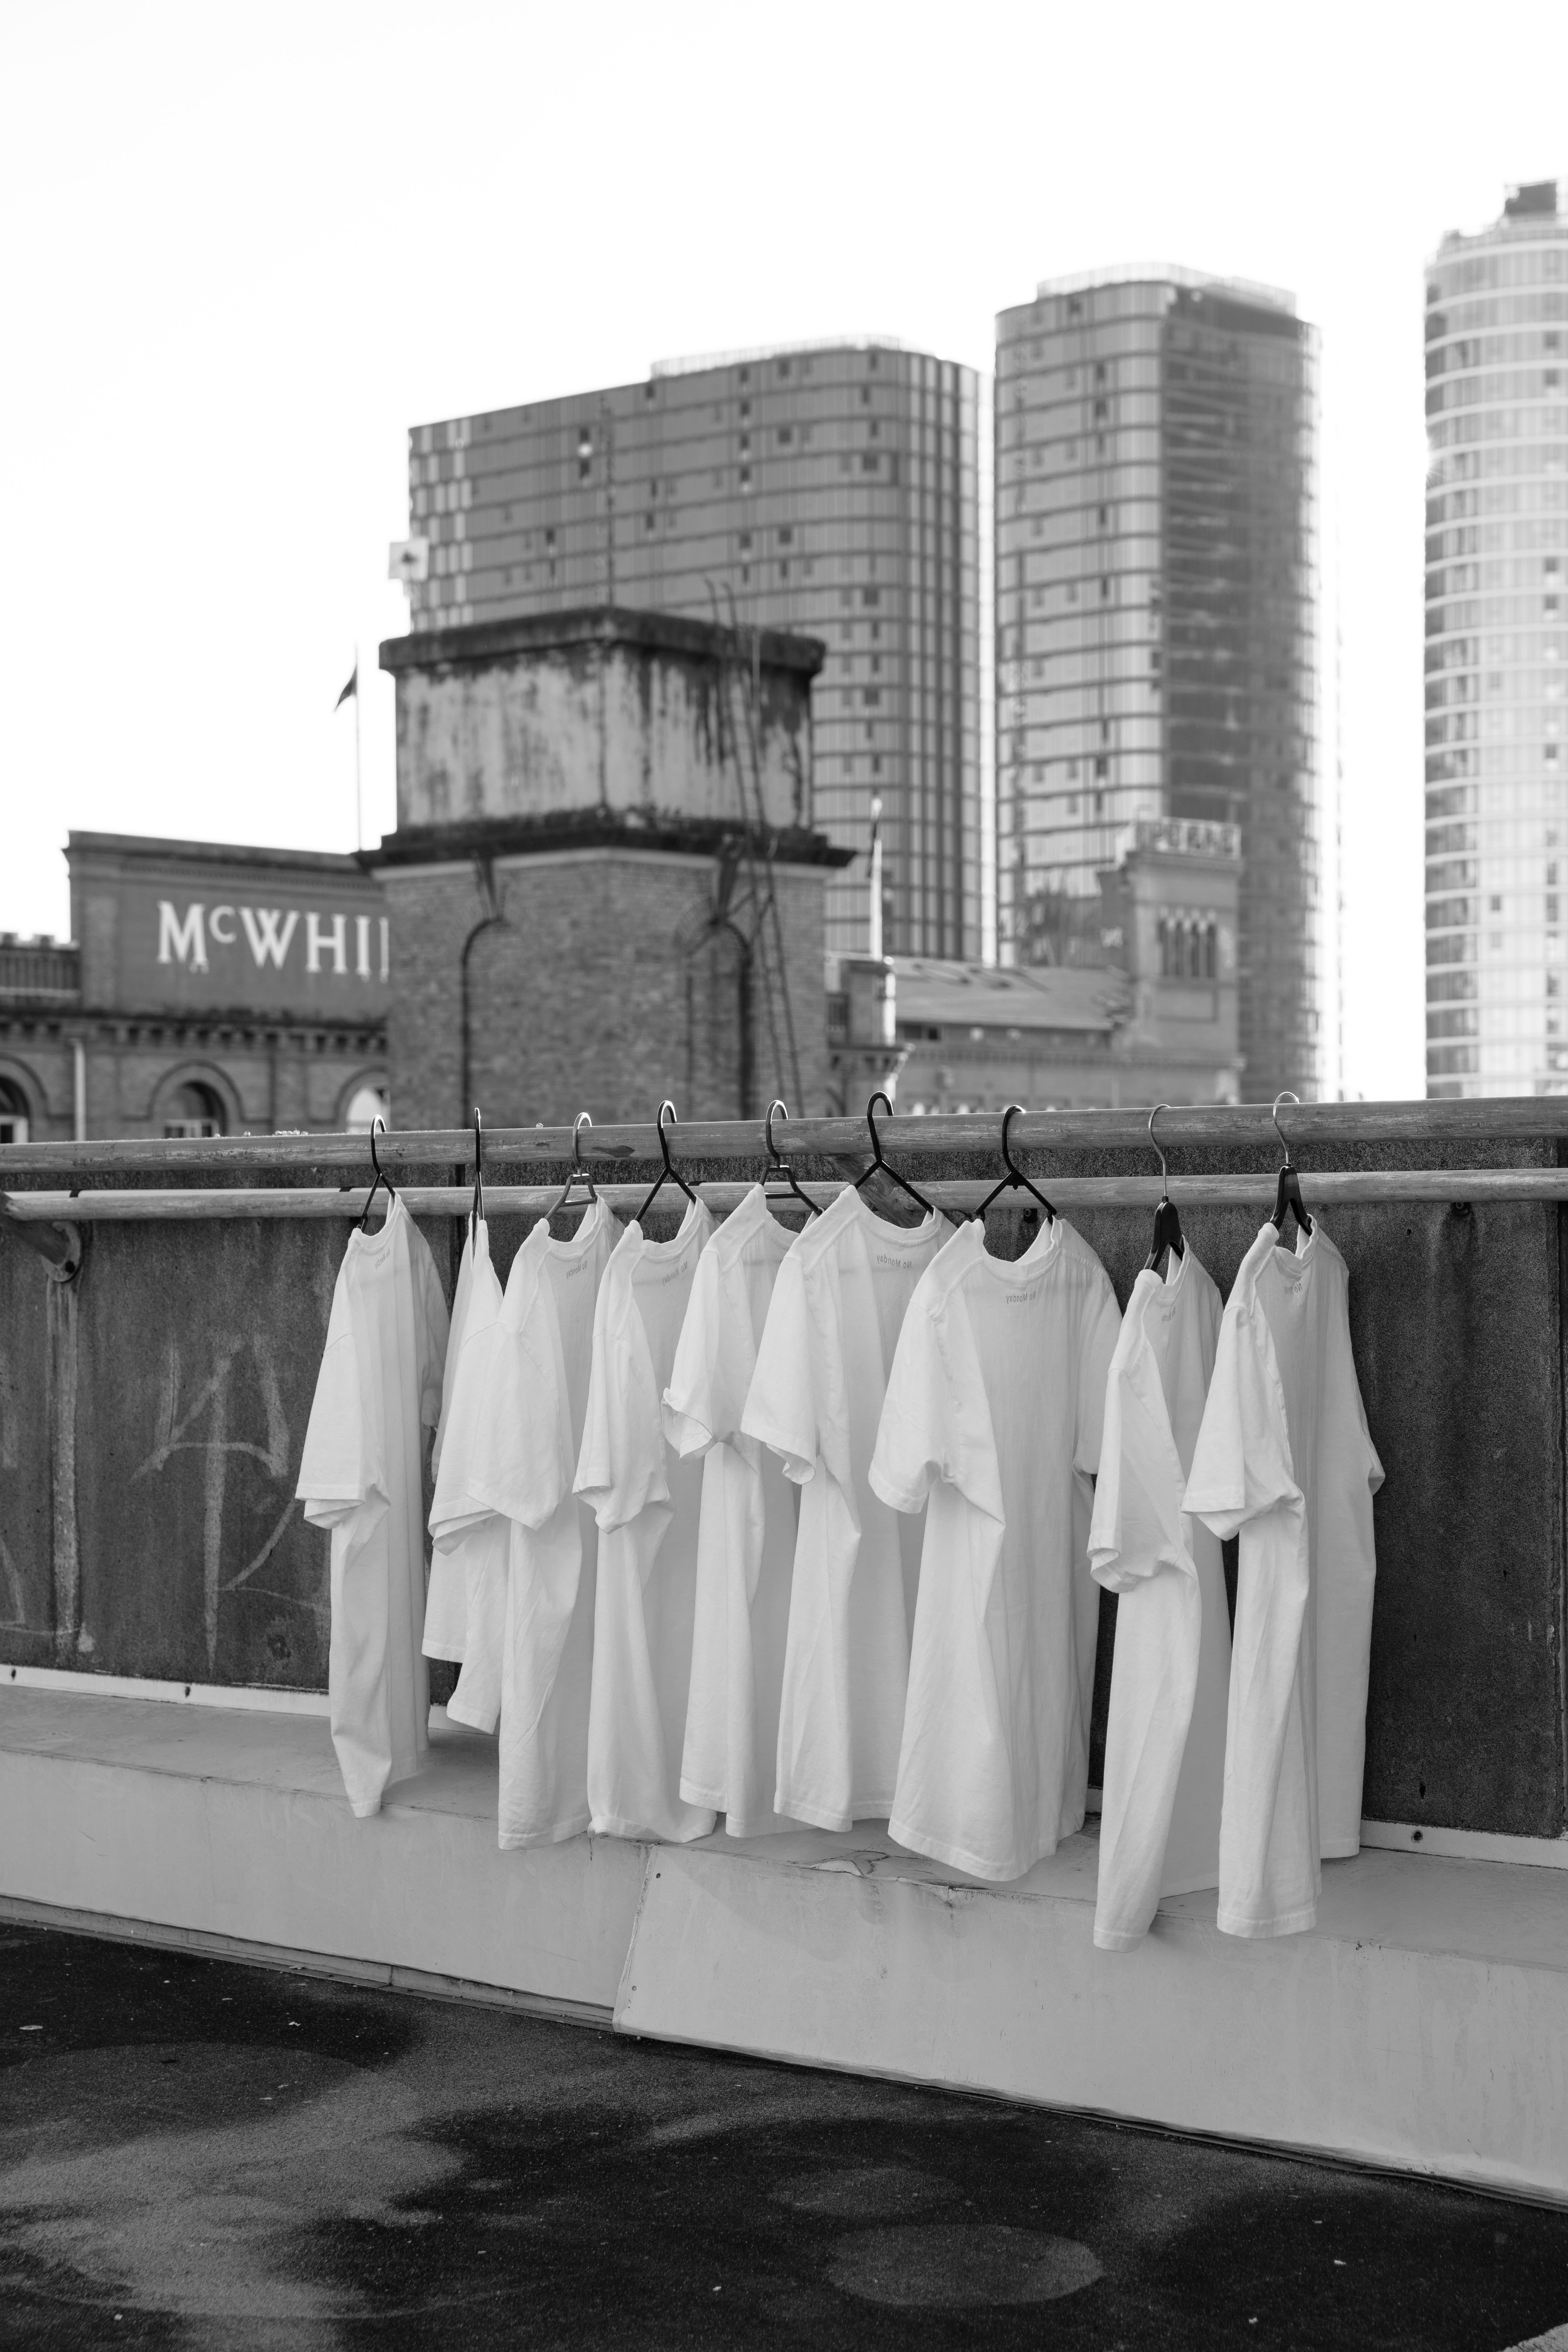 La imagen muestra nueve camisetas blancas.